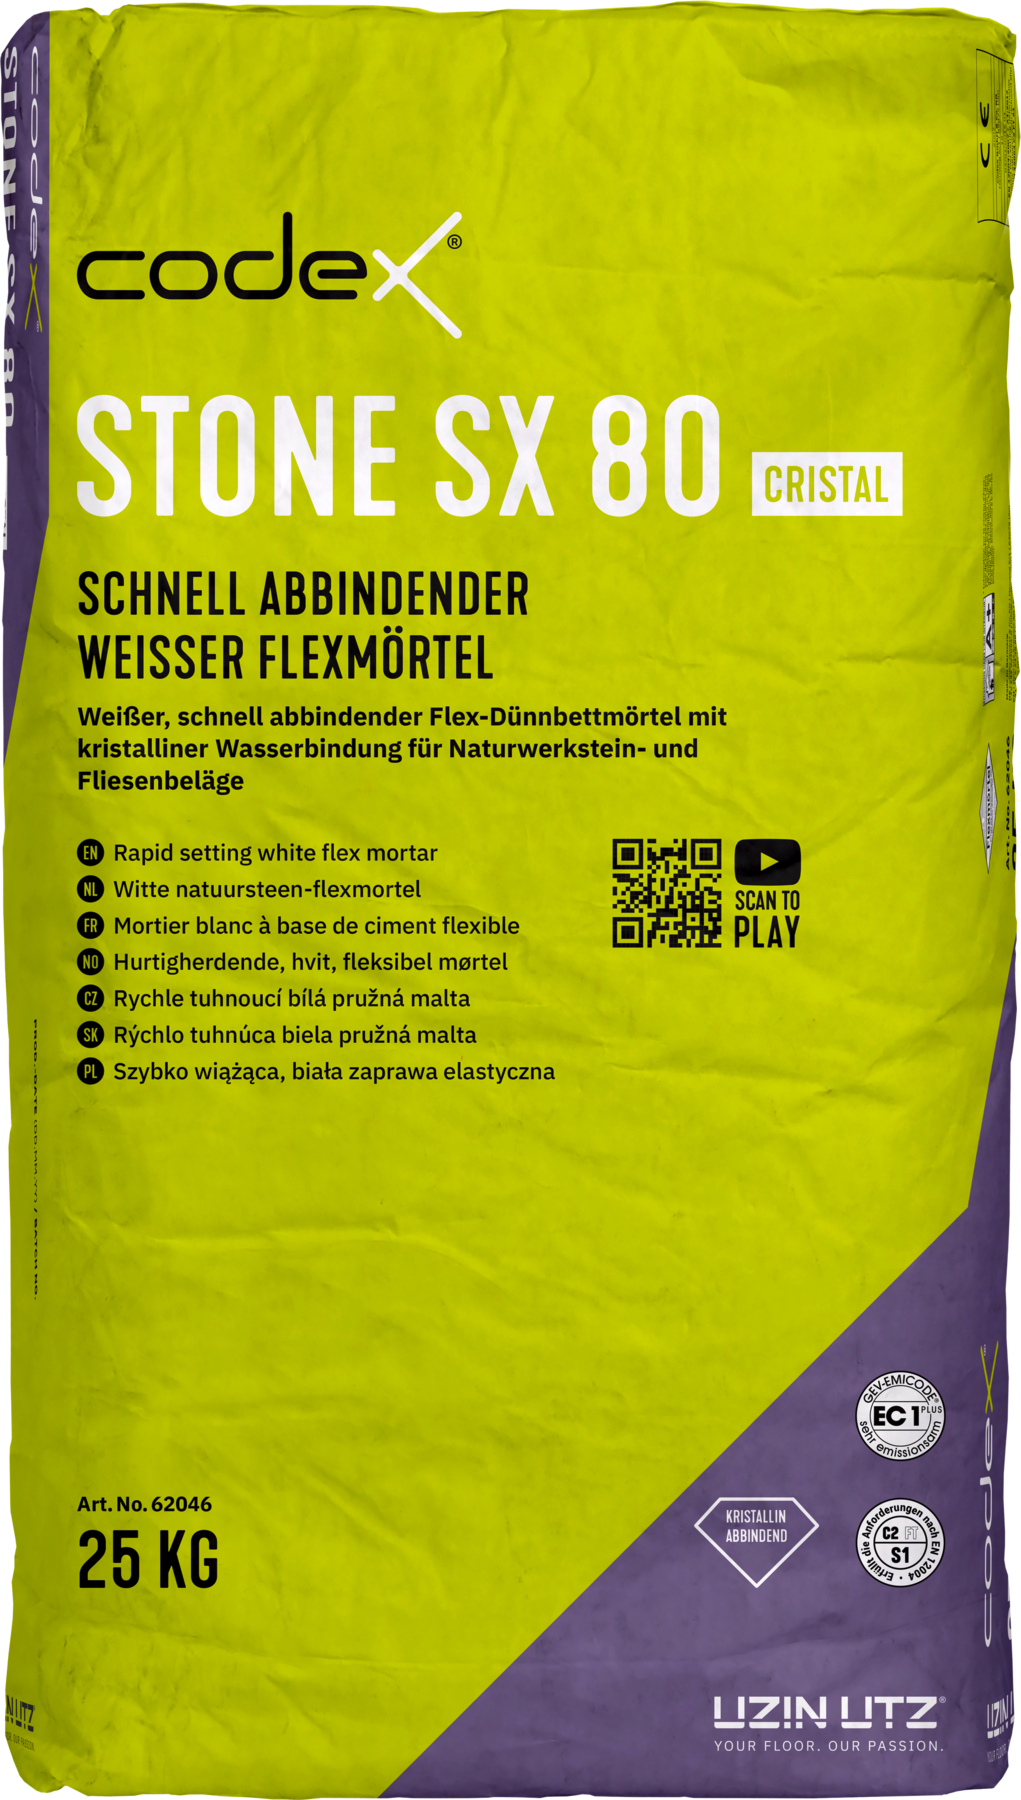 Codex Stone SX 80 cristal 5 kg Schnell abbindender weißer Flexmörtel